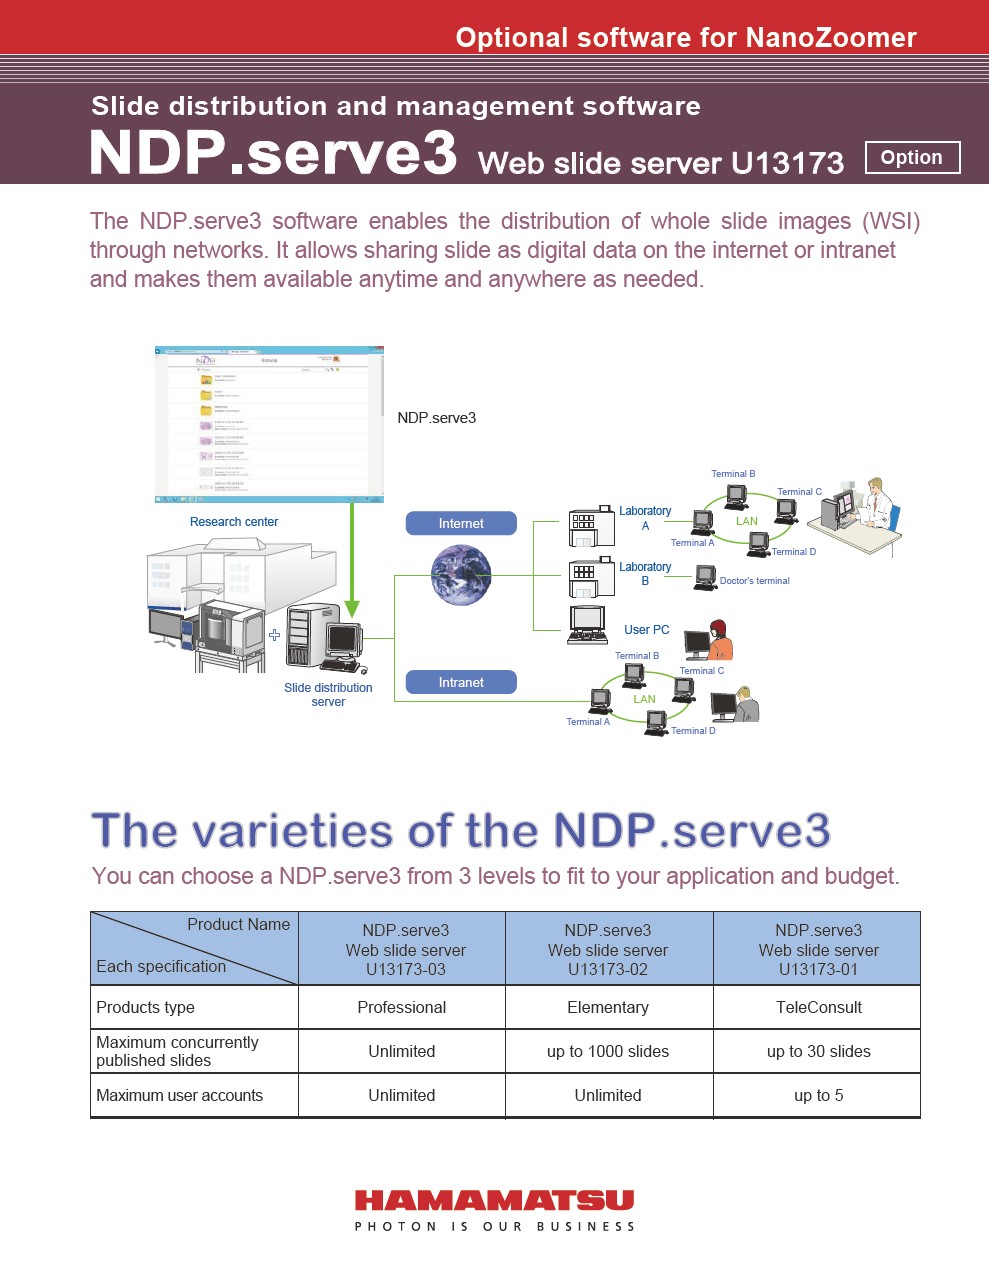 Slide distribution and management software NDP.serve3 Web slide server U13173